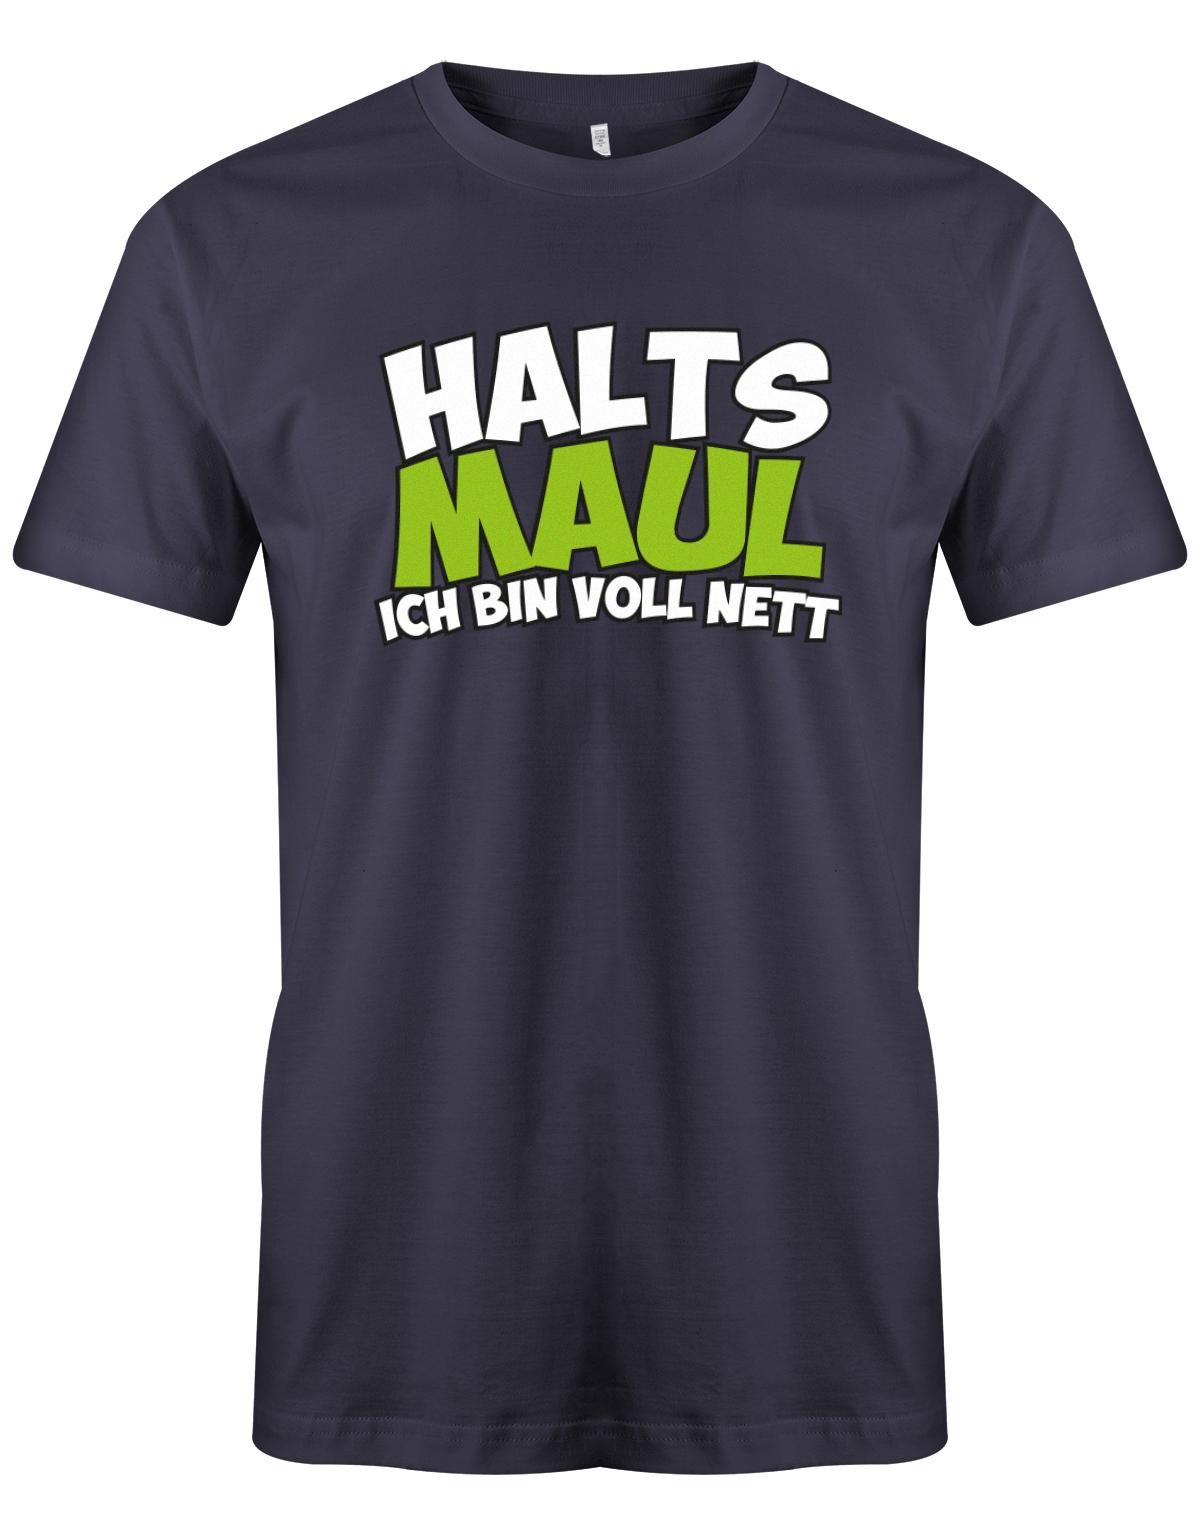 Halts-Maul-ich-bin-voll-nett-Herren-Shirt-Navy